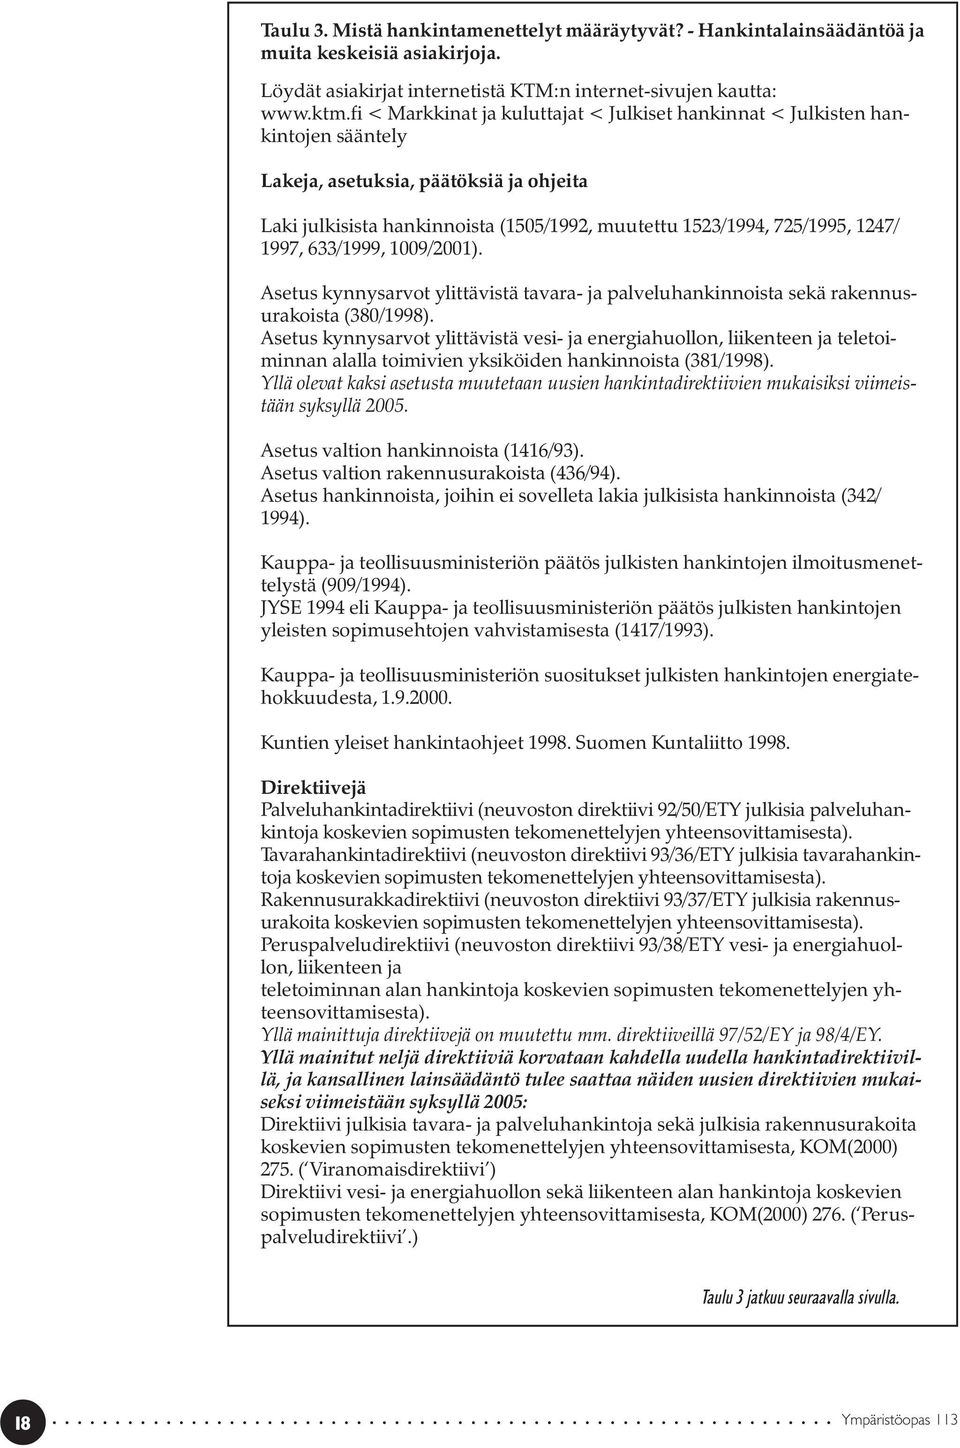 1997, 633/1999, 1009/2001). Asetus kynnysarvot ylittävistä tavara- ja palveluhankinnoista sekä rakennusurakoista (380/1998).